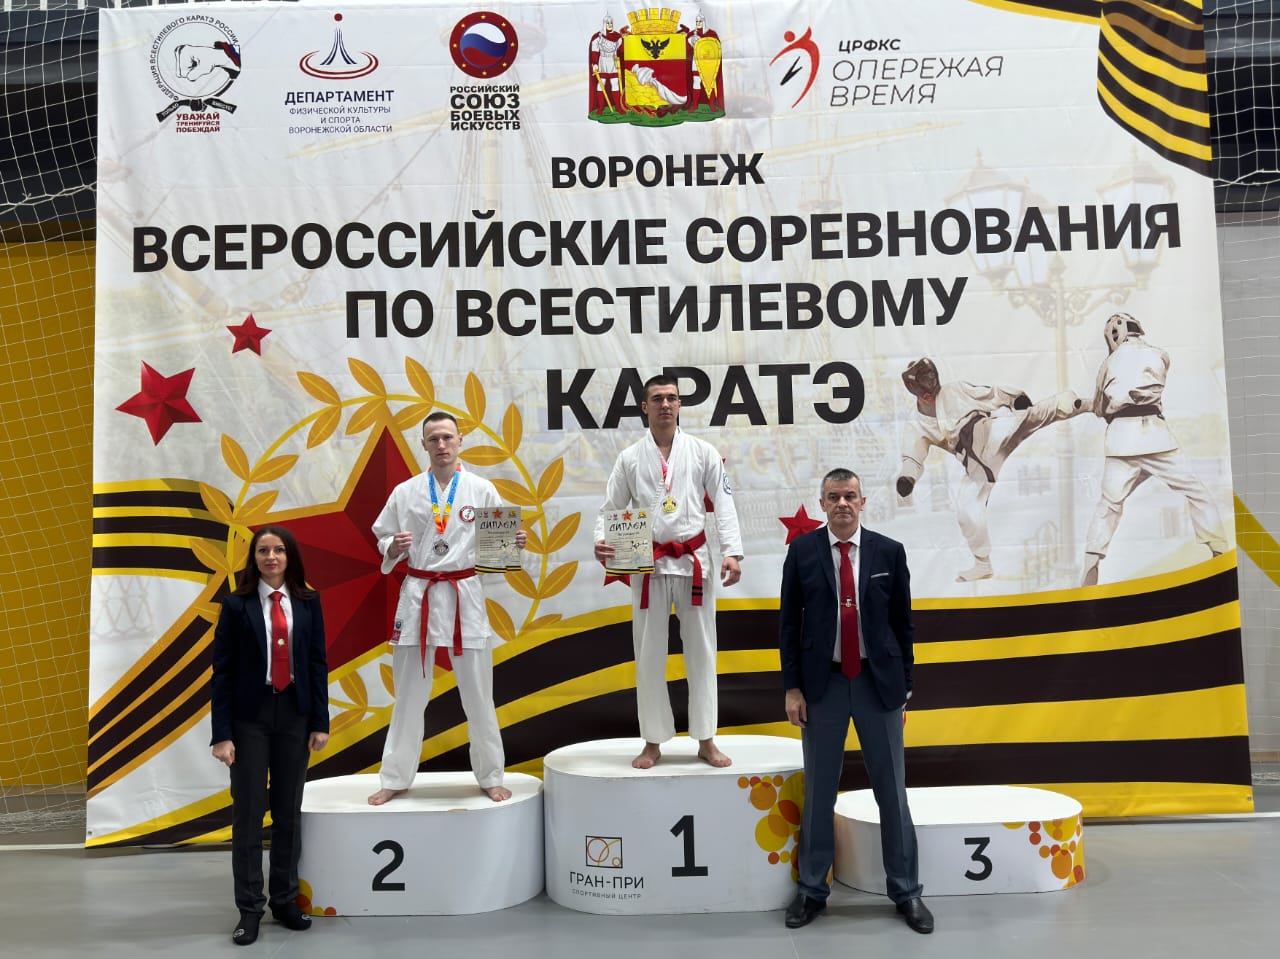  Всероссийские соревнования по всестилевому каратэ